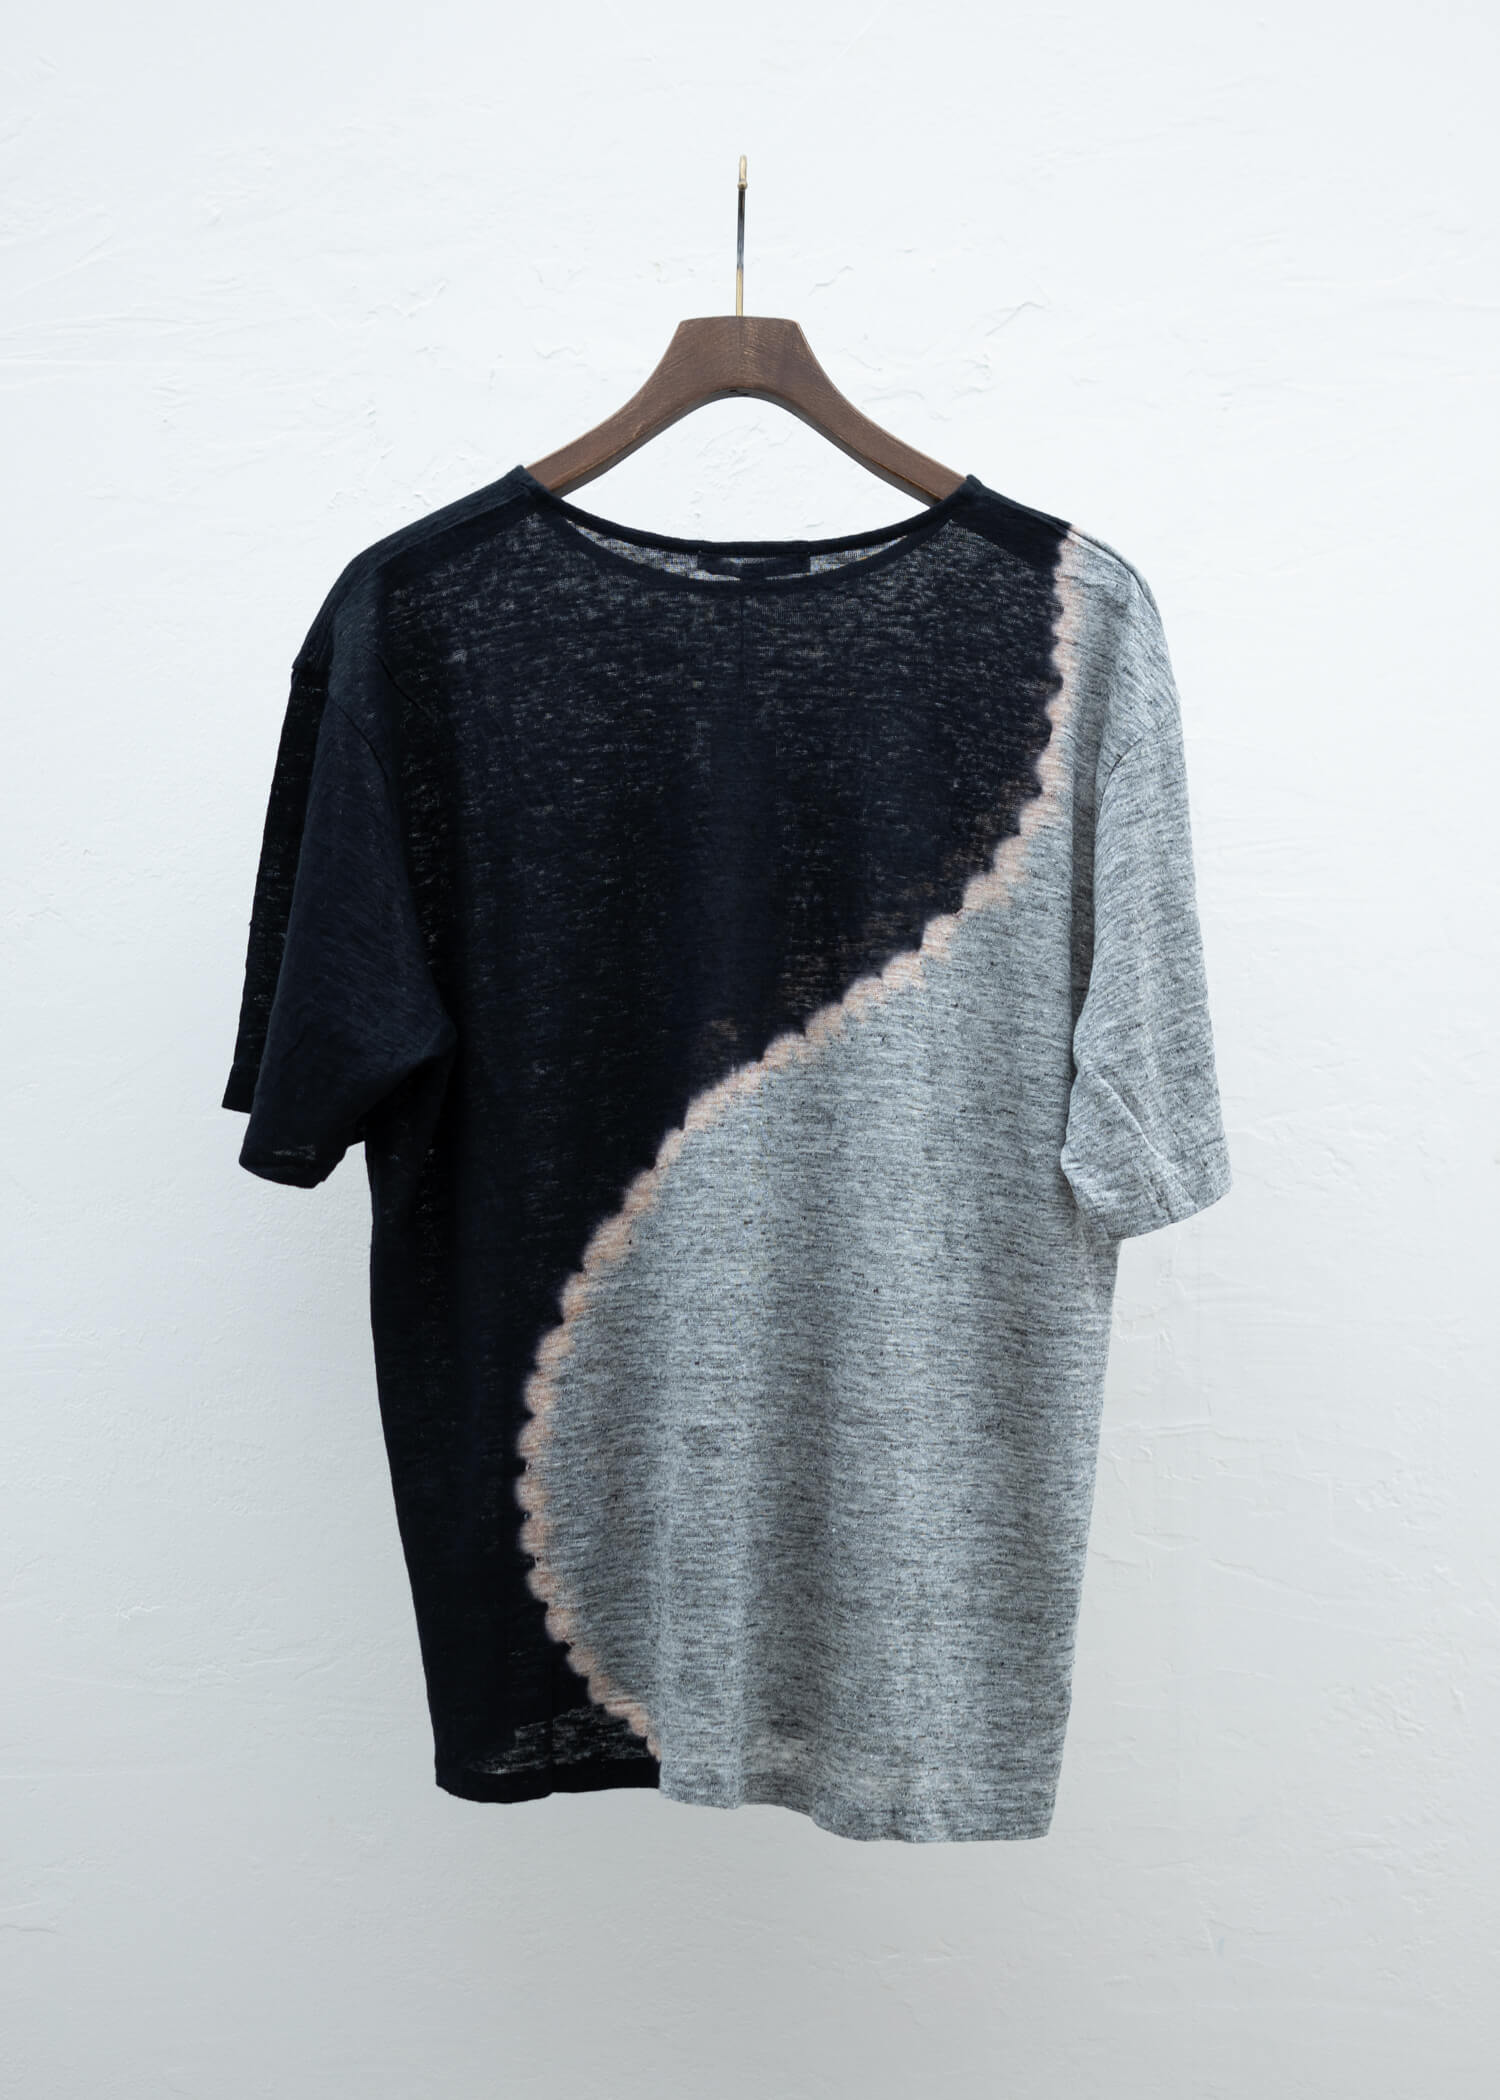 SUZUSAN Linen Jersey Short Sleeve T-Shirt Black / Grey